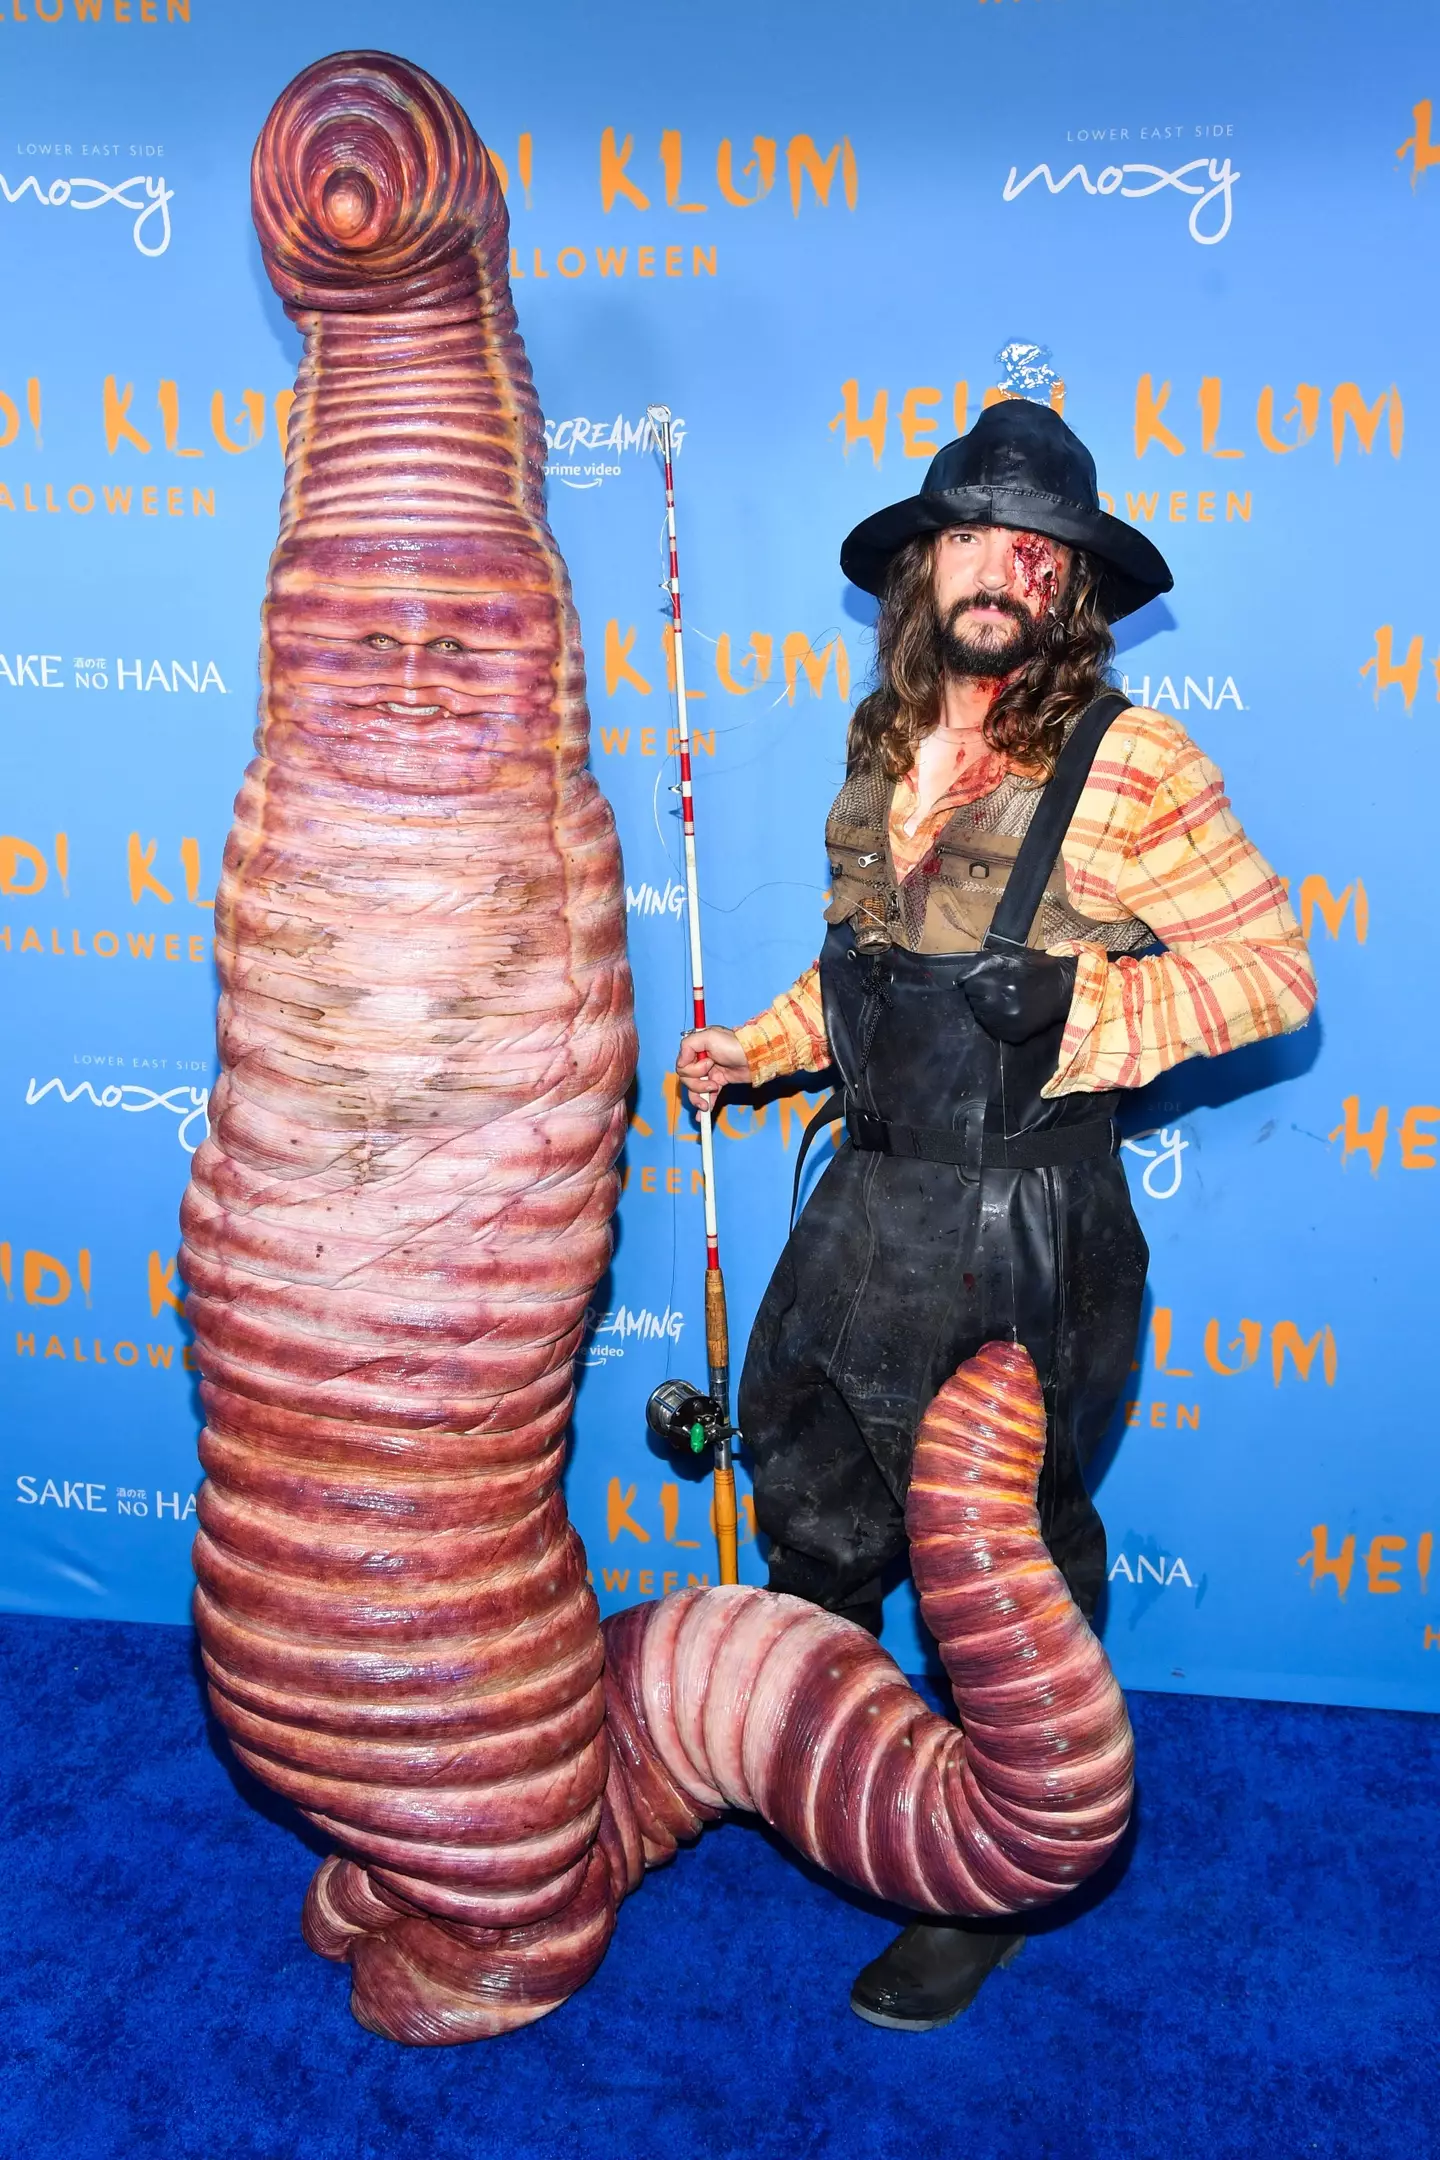 Heidi Klum and her partner Tom Kaulitz in costume.